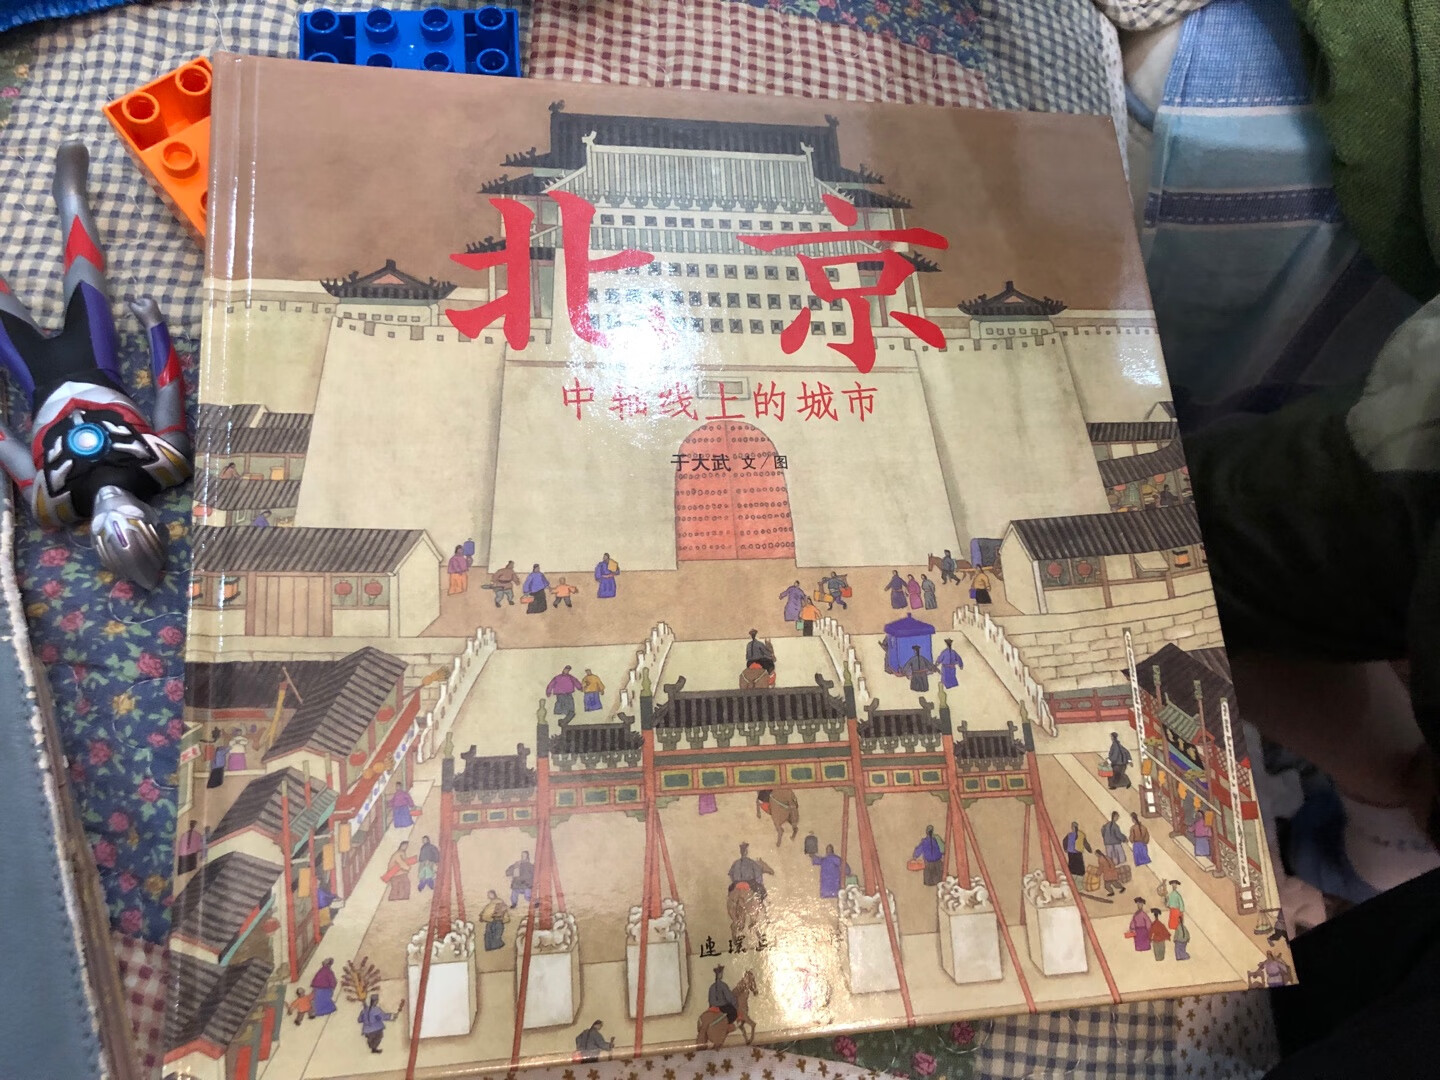 陪孩子读之前自己先看了一遍，虽然去过北京，但只是走马观花，通过这本书让孩子对北京对故宫有些认识。